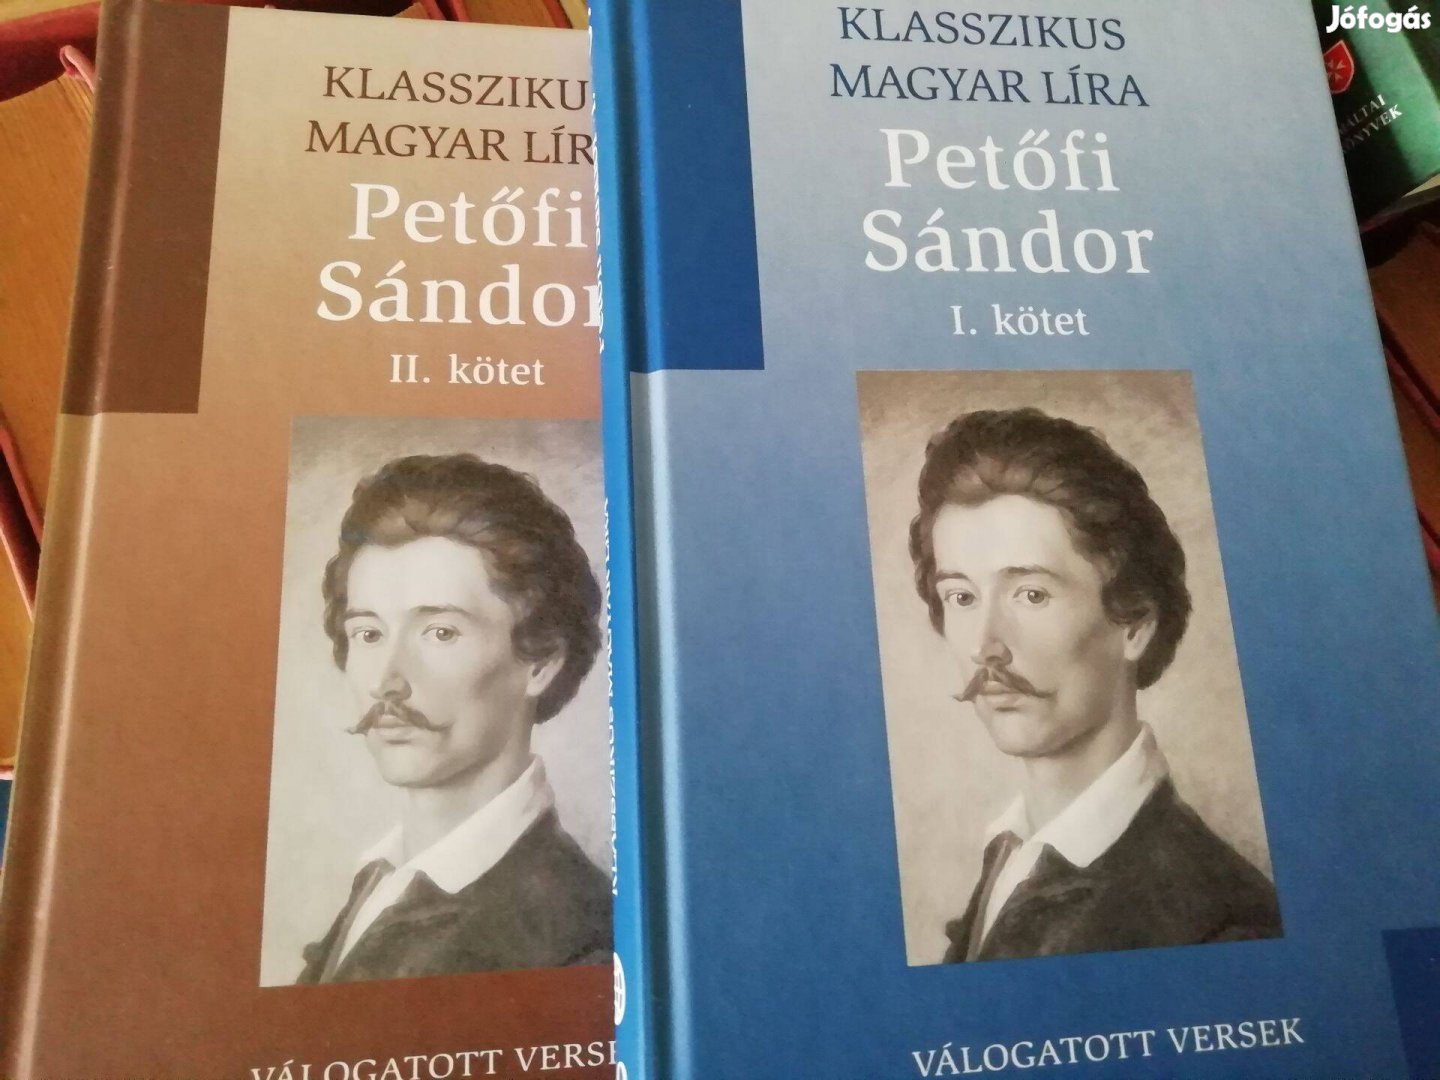 Klasszikus Magyar Líra Petőfi Sándor versek I-II kötet